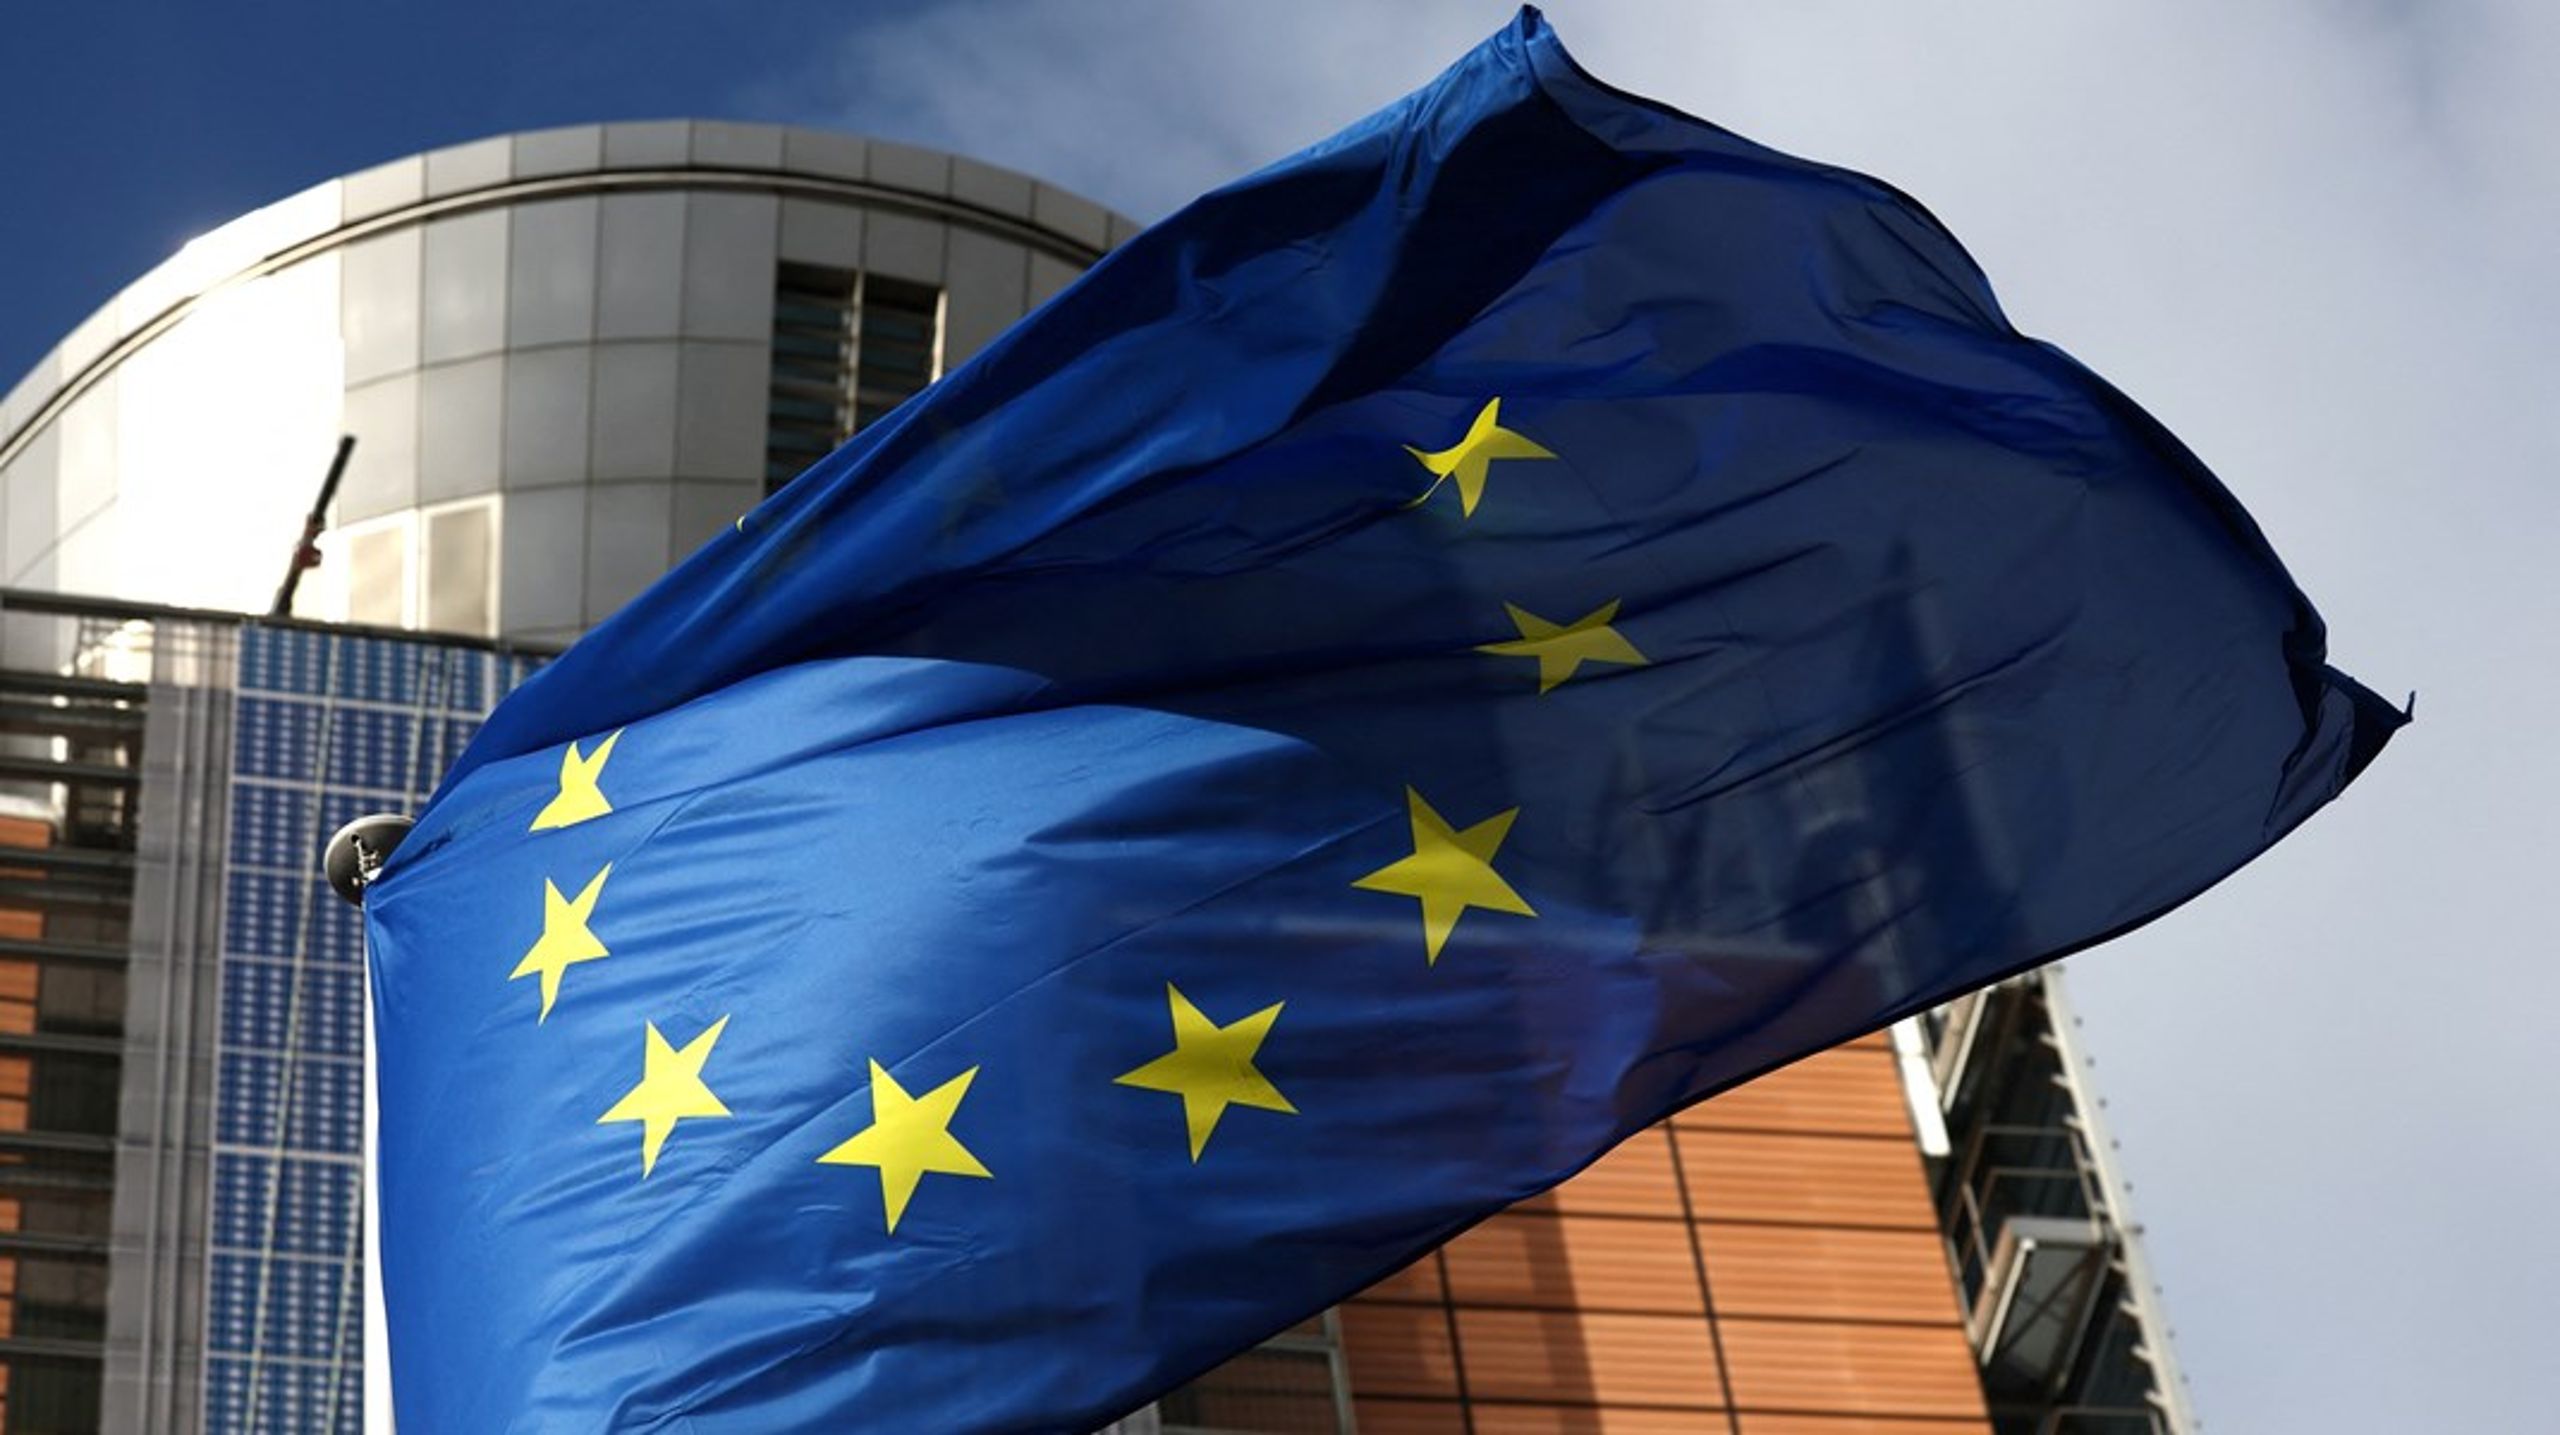 EU-flagget foran Kommisjonens hovedkvarter, den kjente Berlaymontbygningen i Brussel.